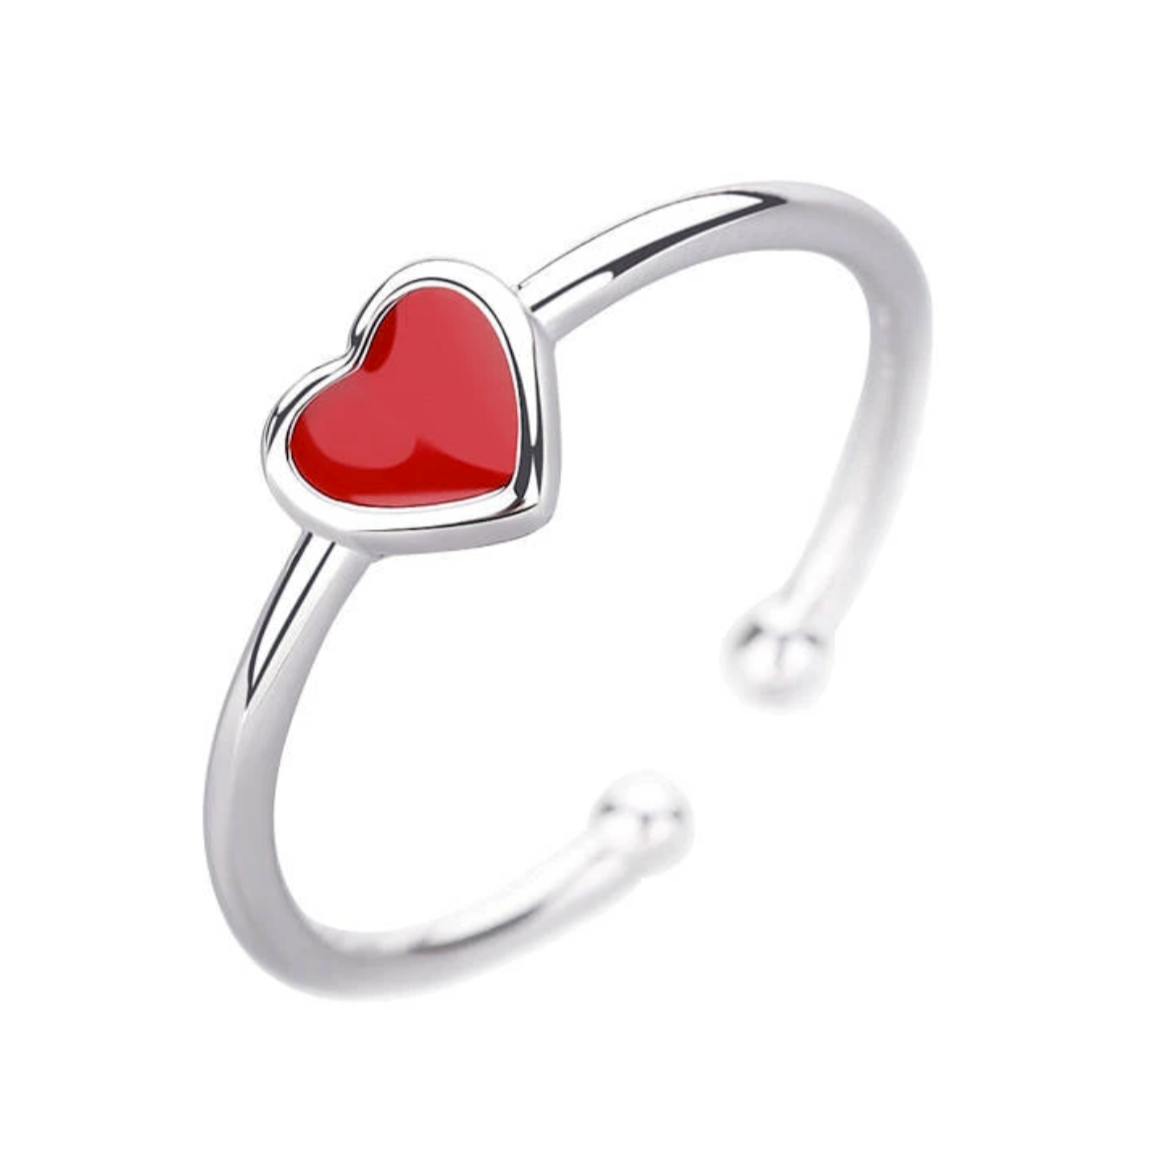 Exprimez votre amour avec notre bague ouverte petit coeur rouge. Cette bague élégante et romantique est conçue pour ressembler à un petit coeur rouge brillant sur votre doigt. La bague est ouverte, ce qui la rend ajustable pour s'adapter à différentes tailles de doigt.